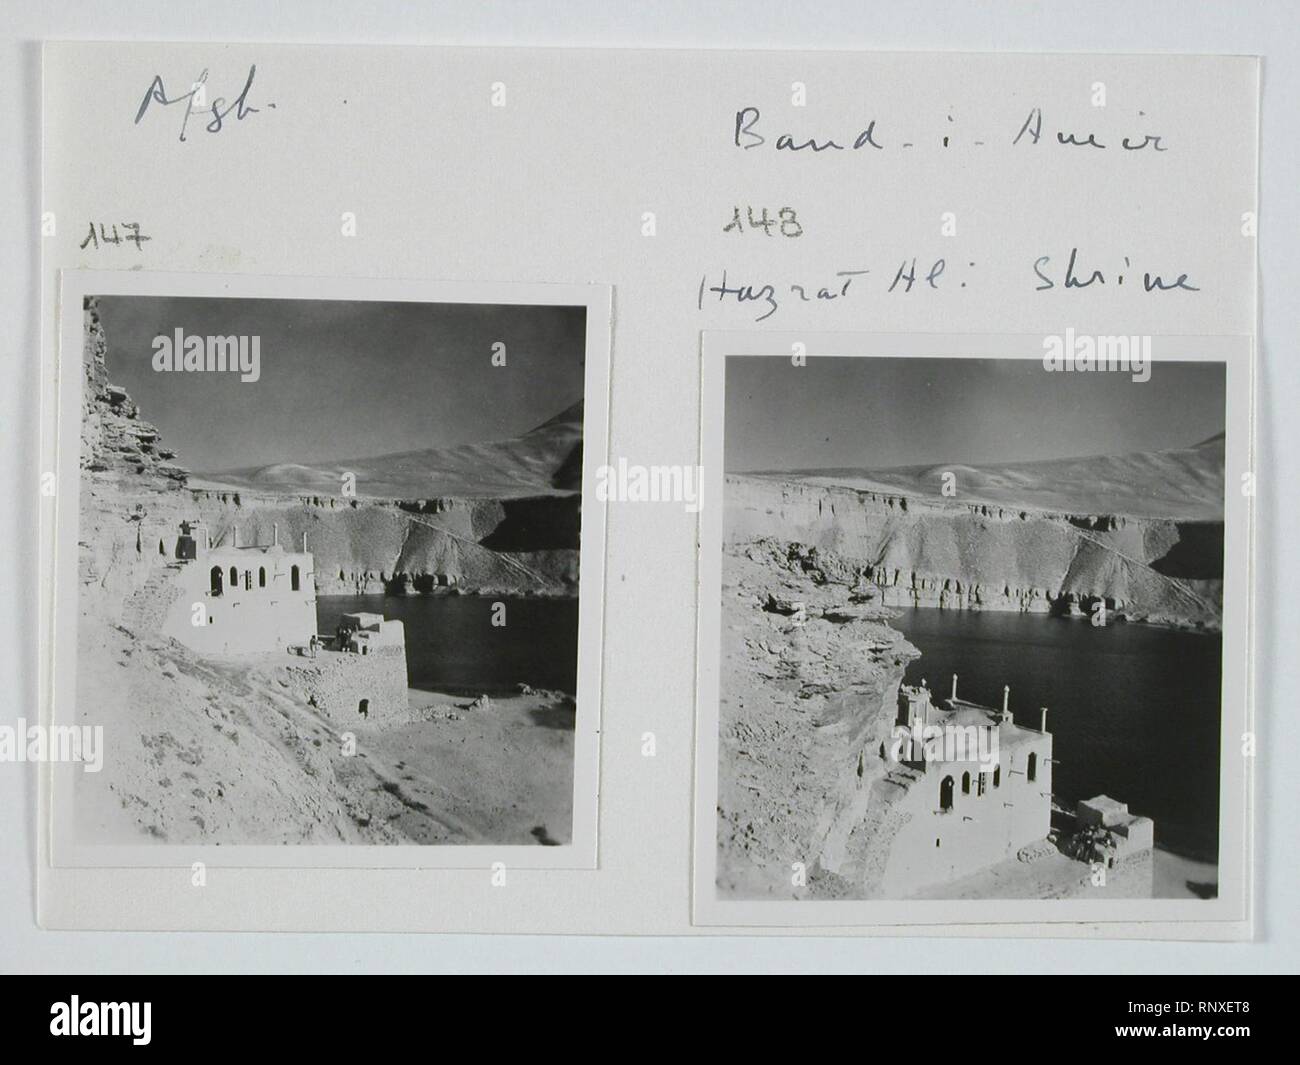 CH-NB - Afghanistan, Band-i-Emir, Band-i-Amir (Band-e-Amir)- Landschaft - Annemarie Schwarzenbach - SLA-Schwarzenbach-A-5-20-189. Stock Photo